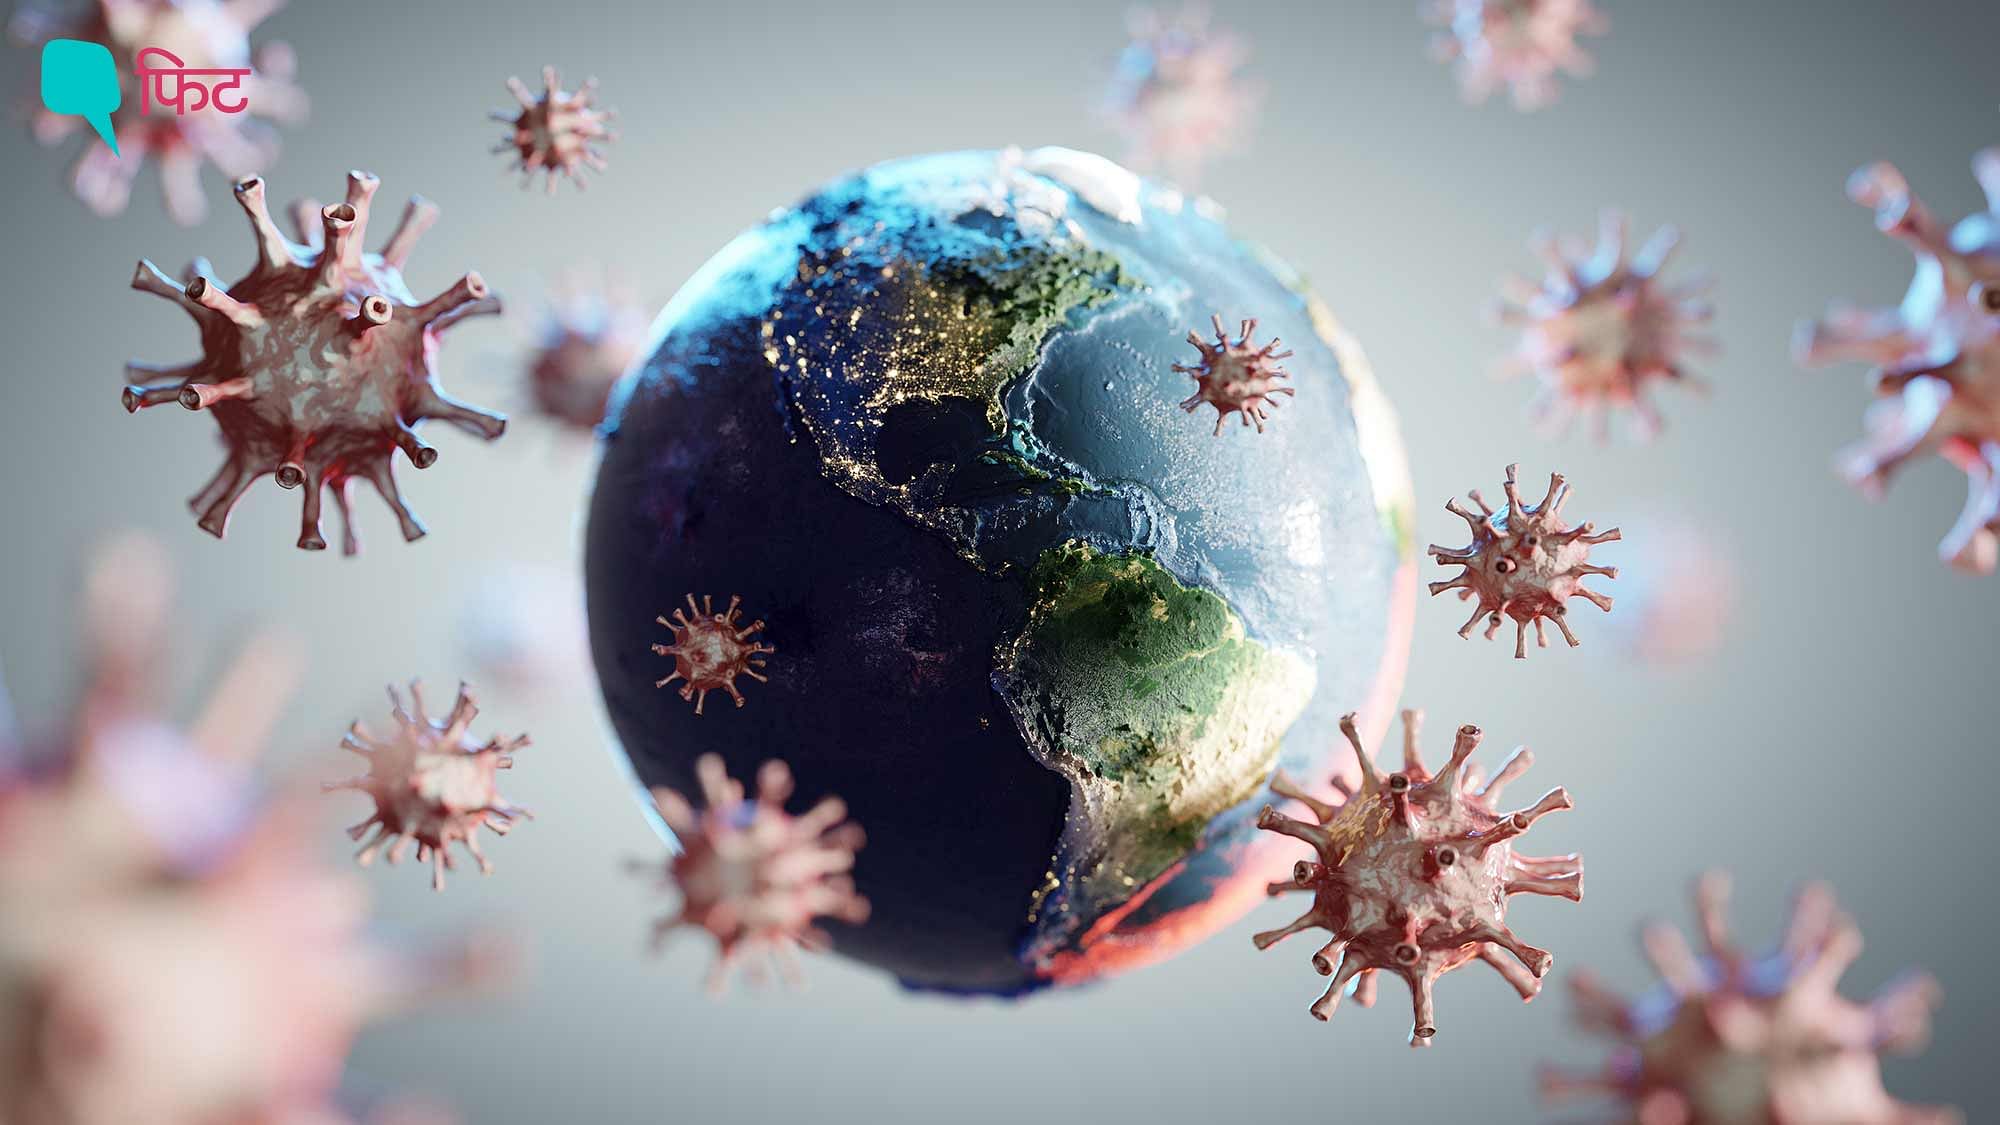 <div class="paragraphs"><p>Deadly Viruses Of The world: 12 वायरस जो आंखों से नहीं दिखते पर दुनिया भर में तबाही मचाते हैं.</p></div>